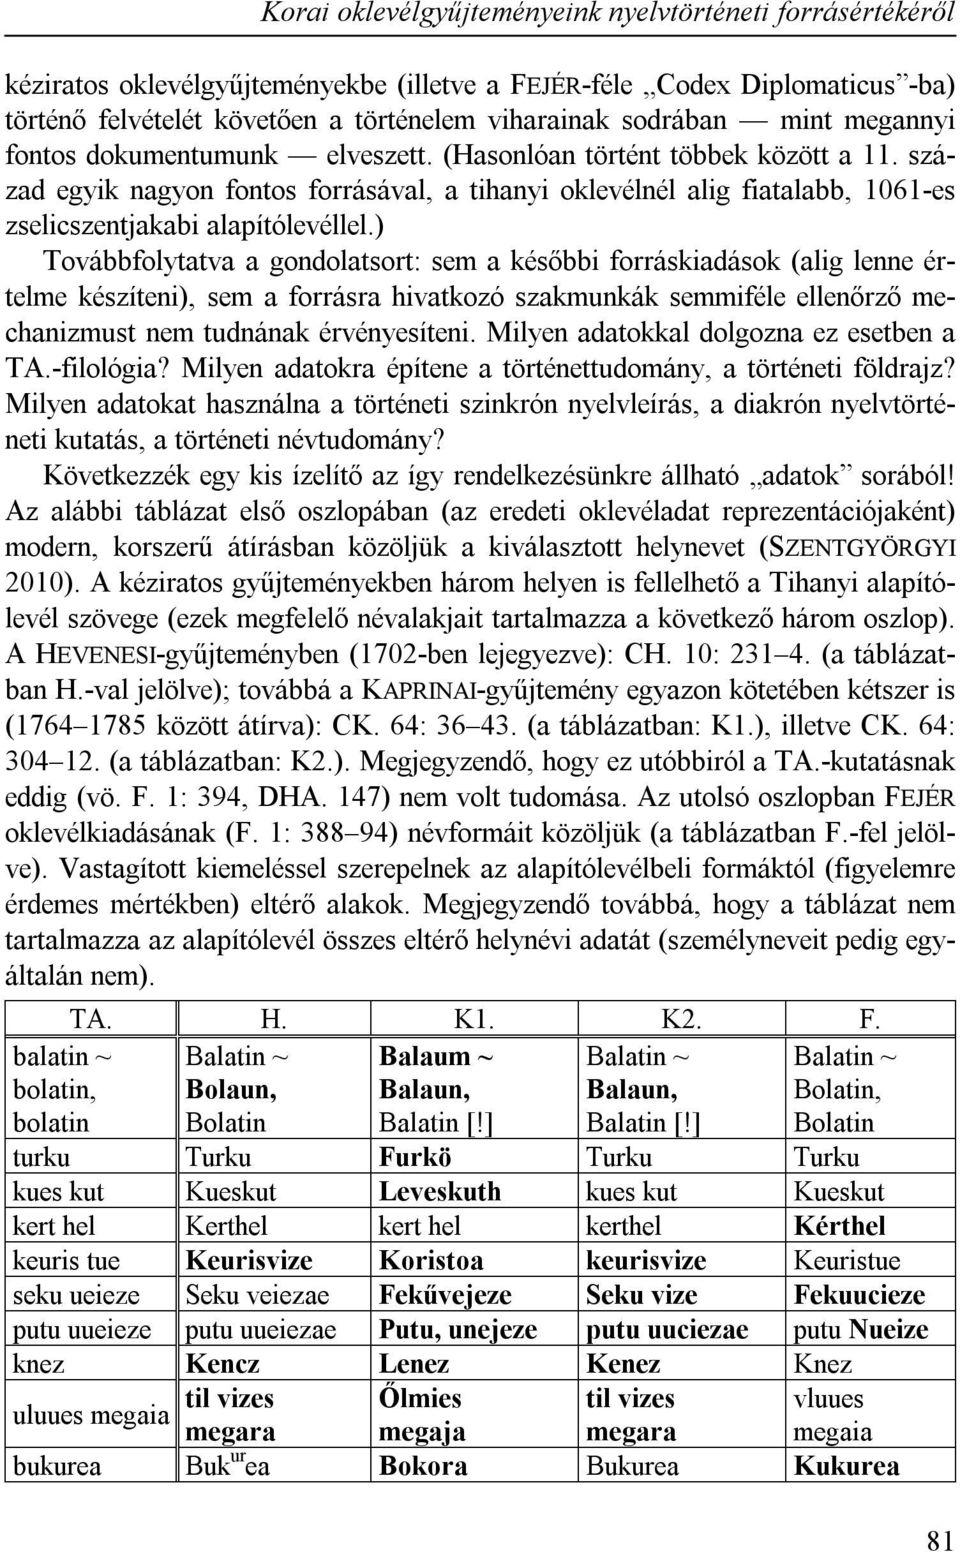 század egyik nagyon fontos forrásával, a tihanyi oklevélnél alig fiatalabb, 1061-es zselicszentjakabi alapítólevéllel.